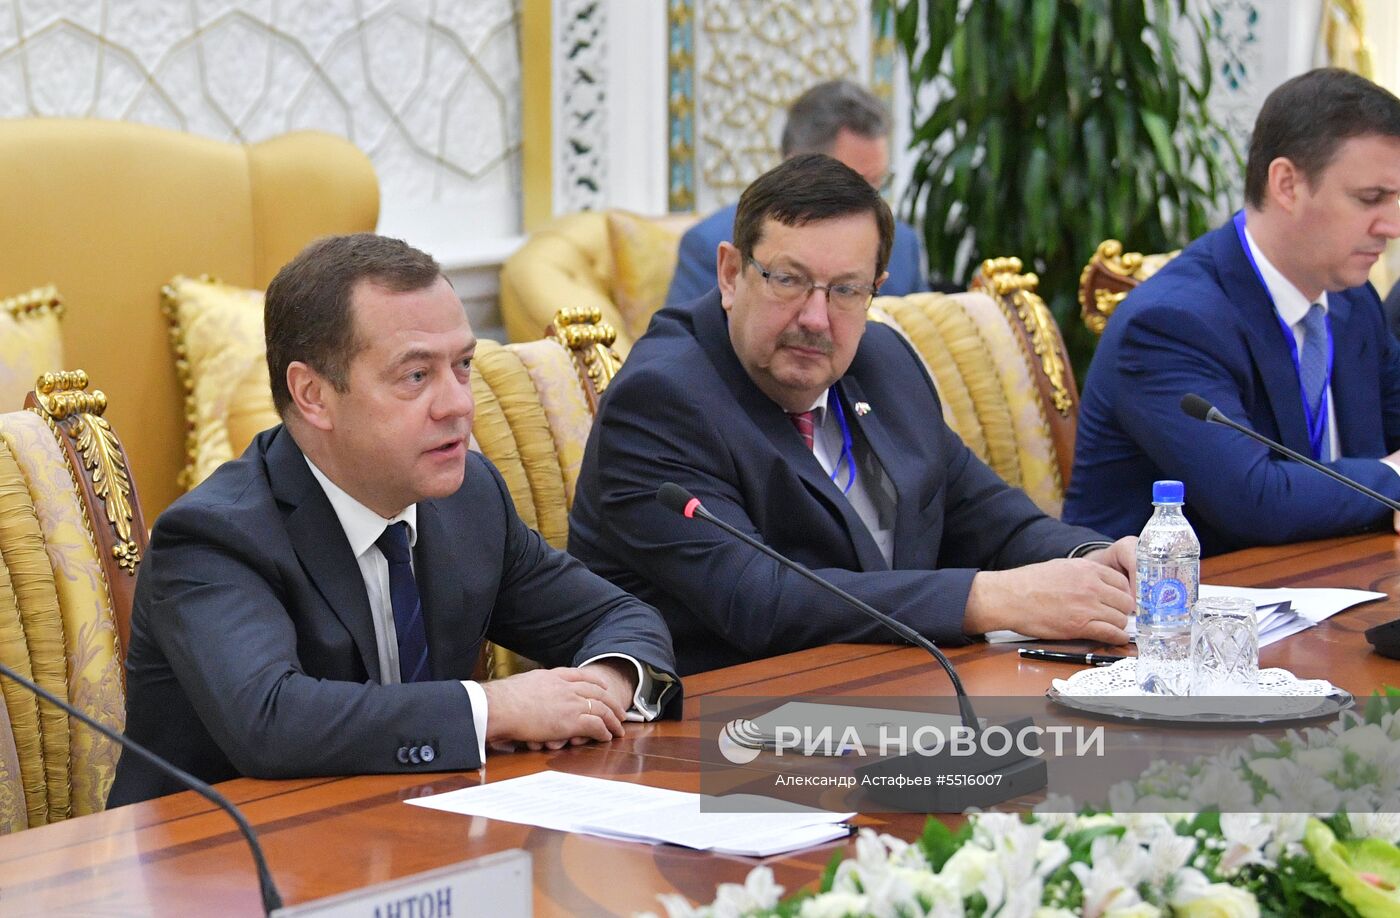 Официальный визит премьер-министра РФ Д. Медведева в Таджикистан